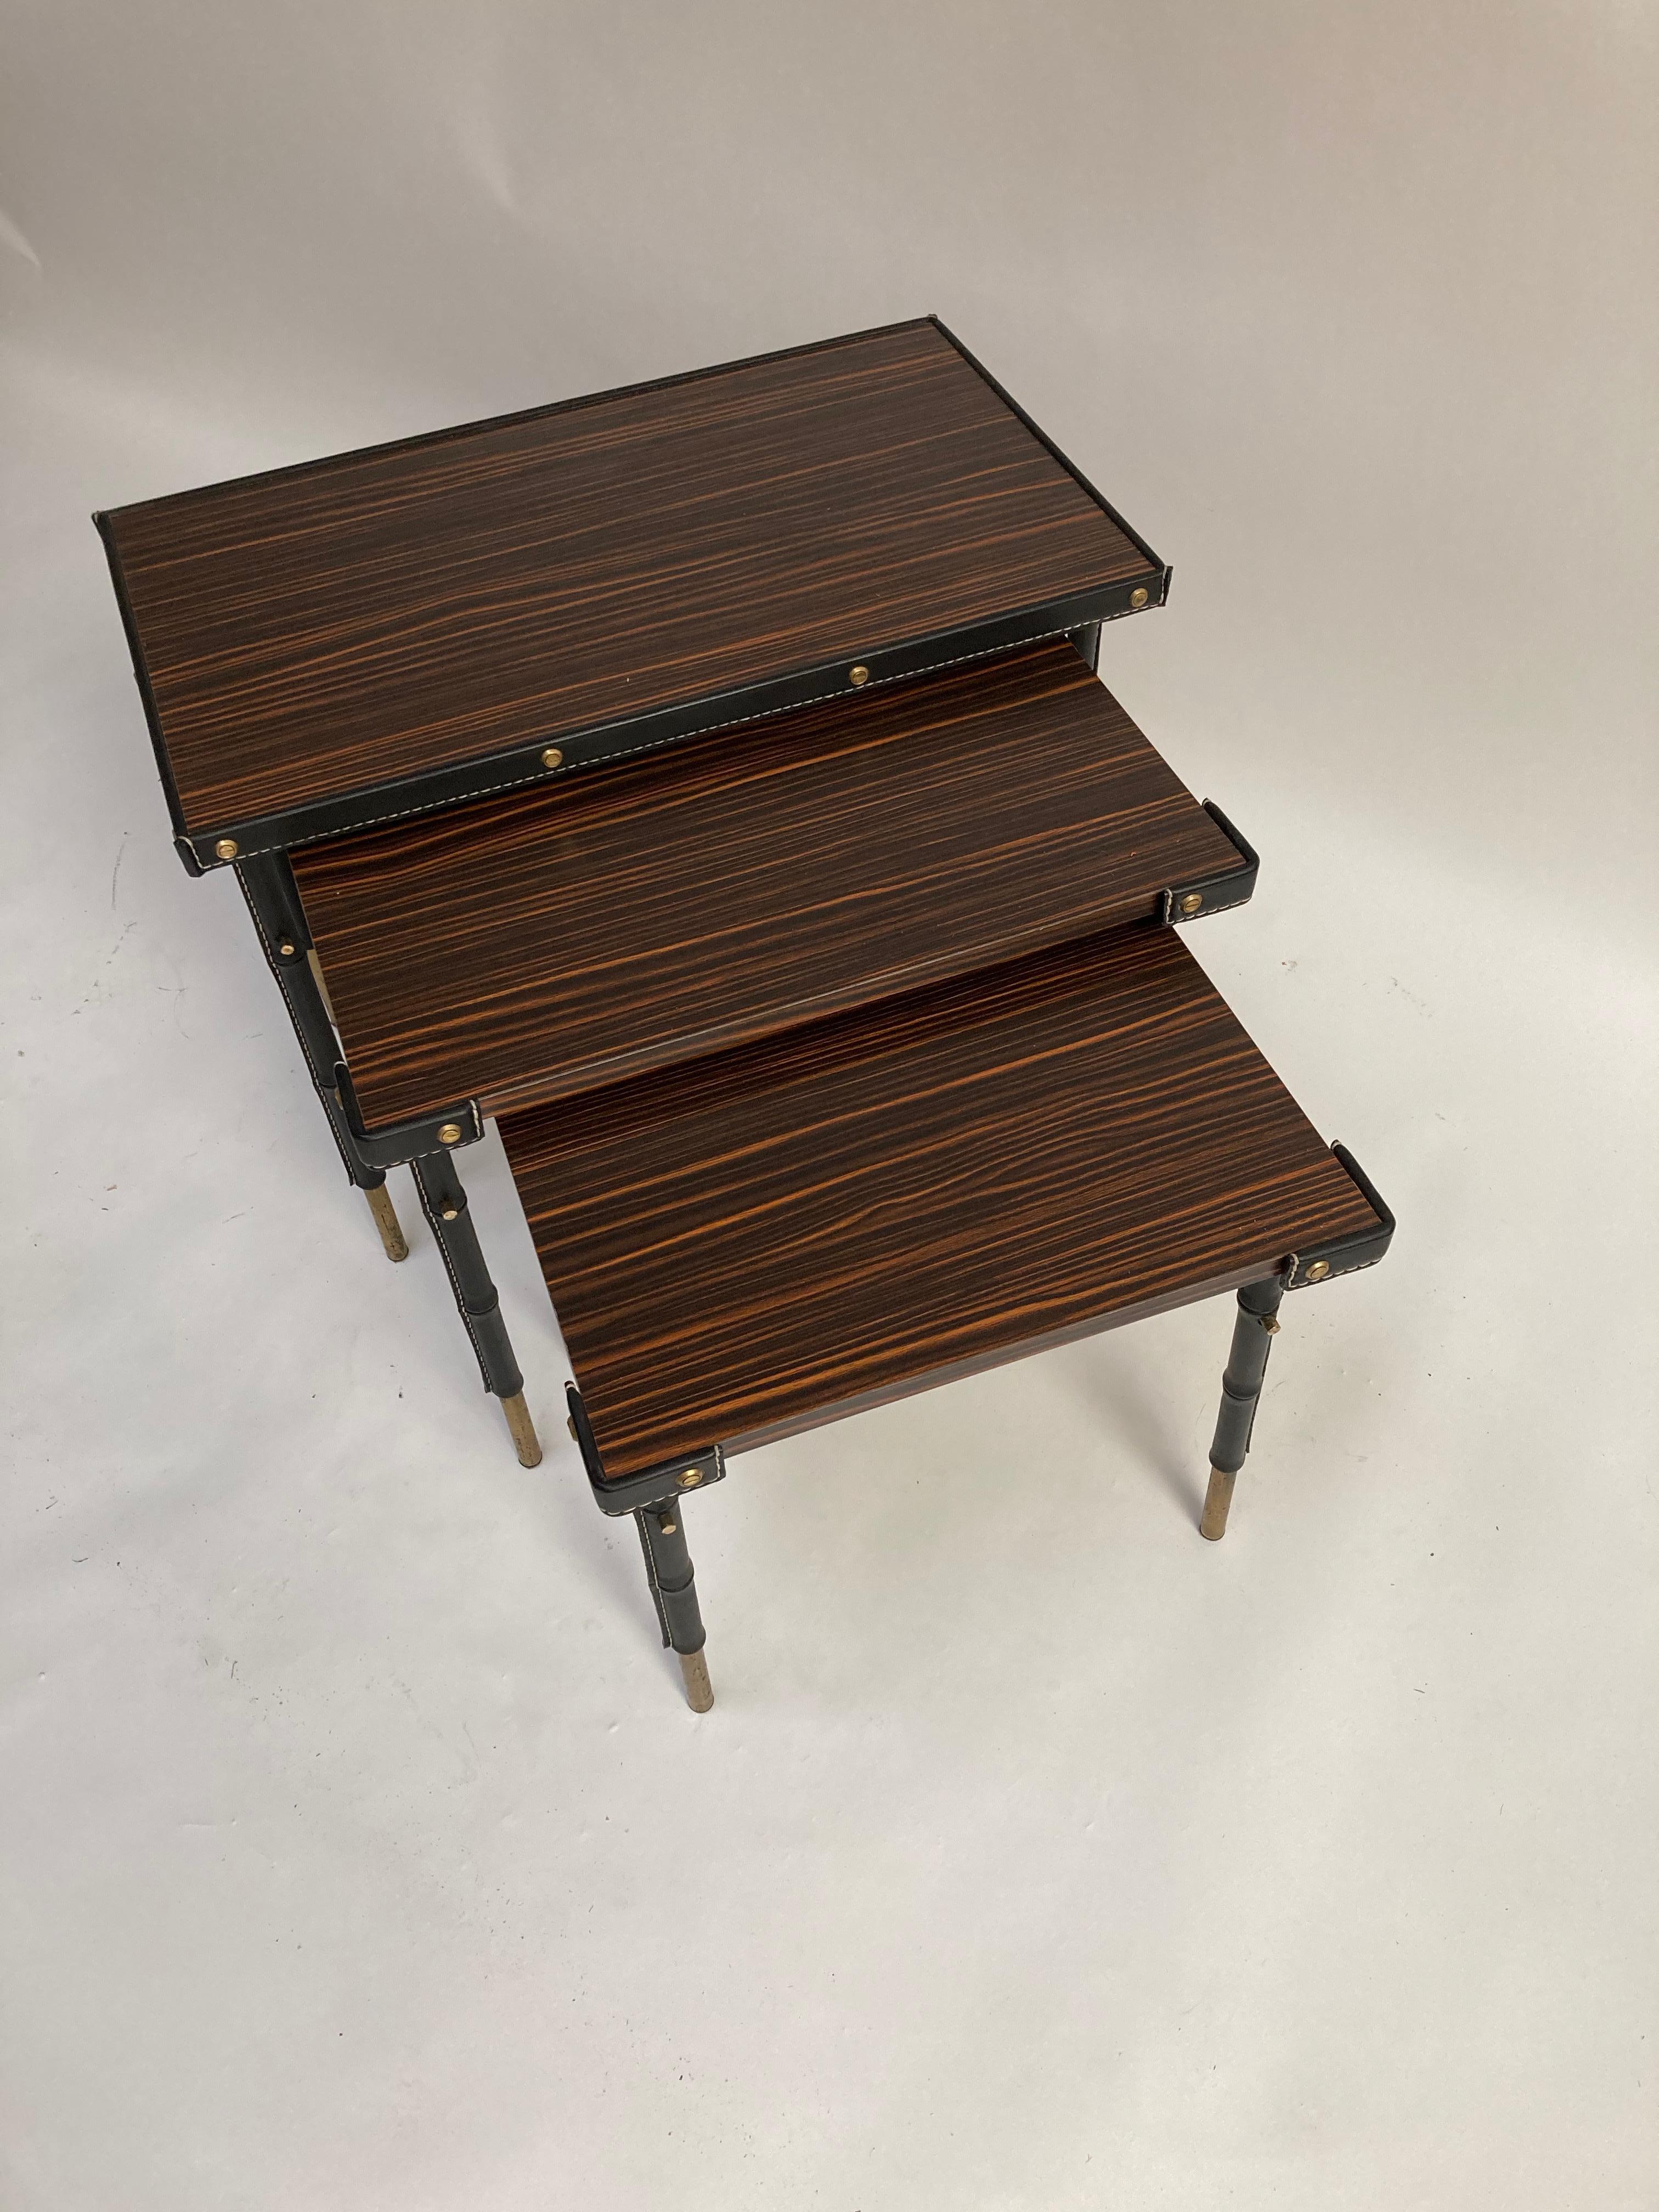 tables gigognes en cuir surpiqué des années 1950 par Jacques Adnet
Très bon état
France
Dimensions : 62 x 37 x 48
52 x 37 x 44 
37 x 42 x 40 cm.